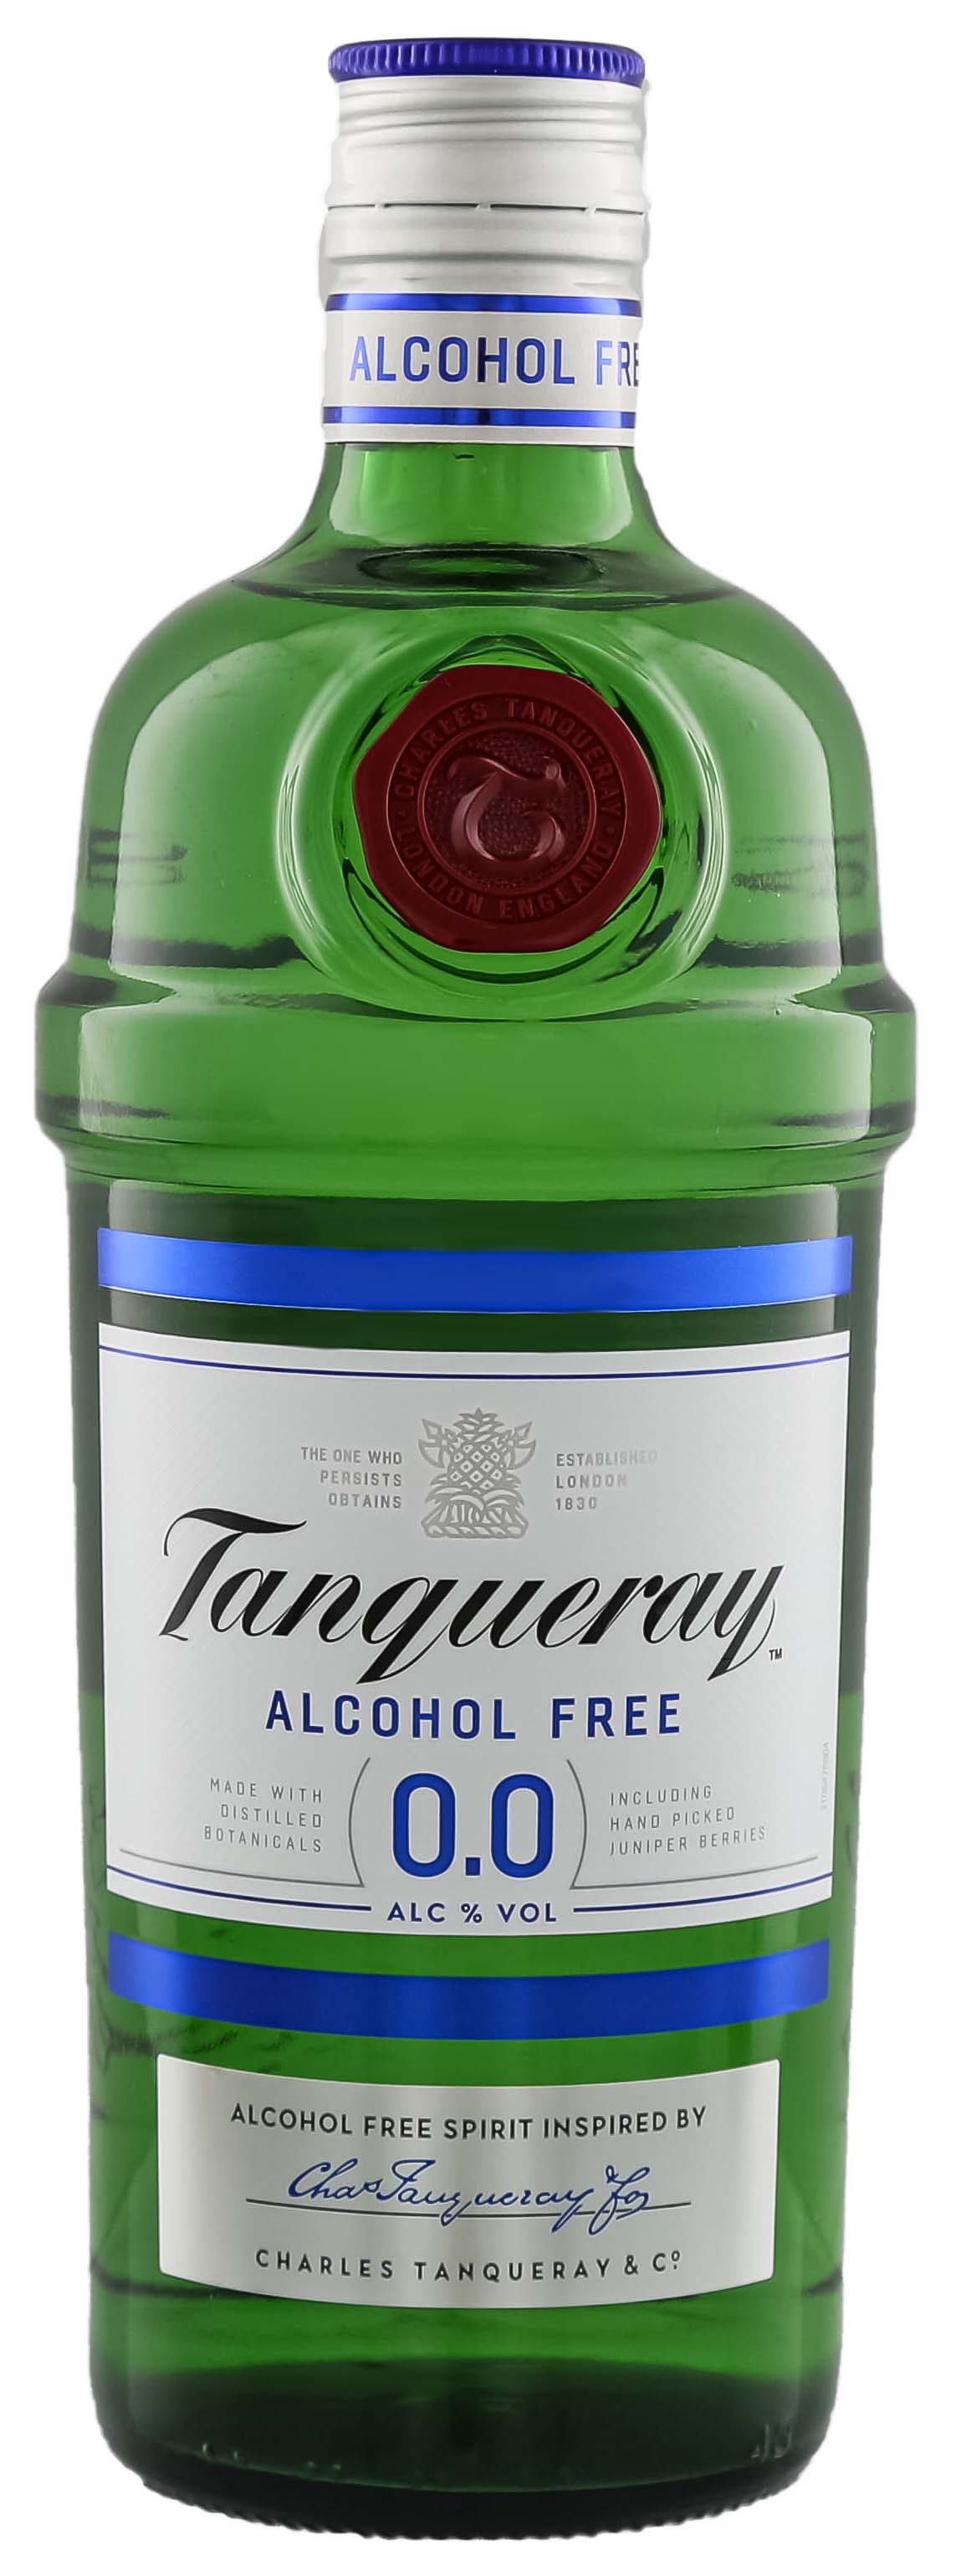 Tanqueray Alkoholfrei 0,0% jetzt kaufen Shop! im Drinkology Online